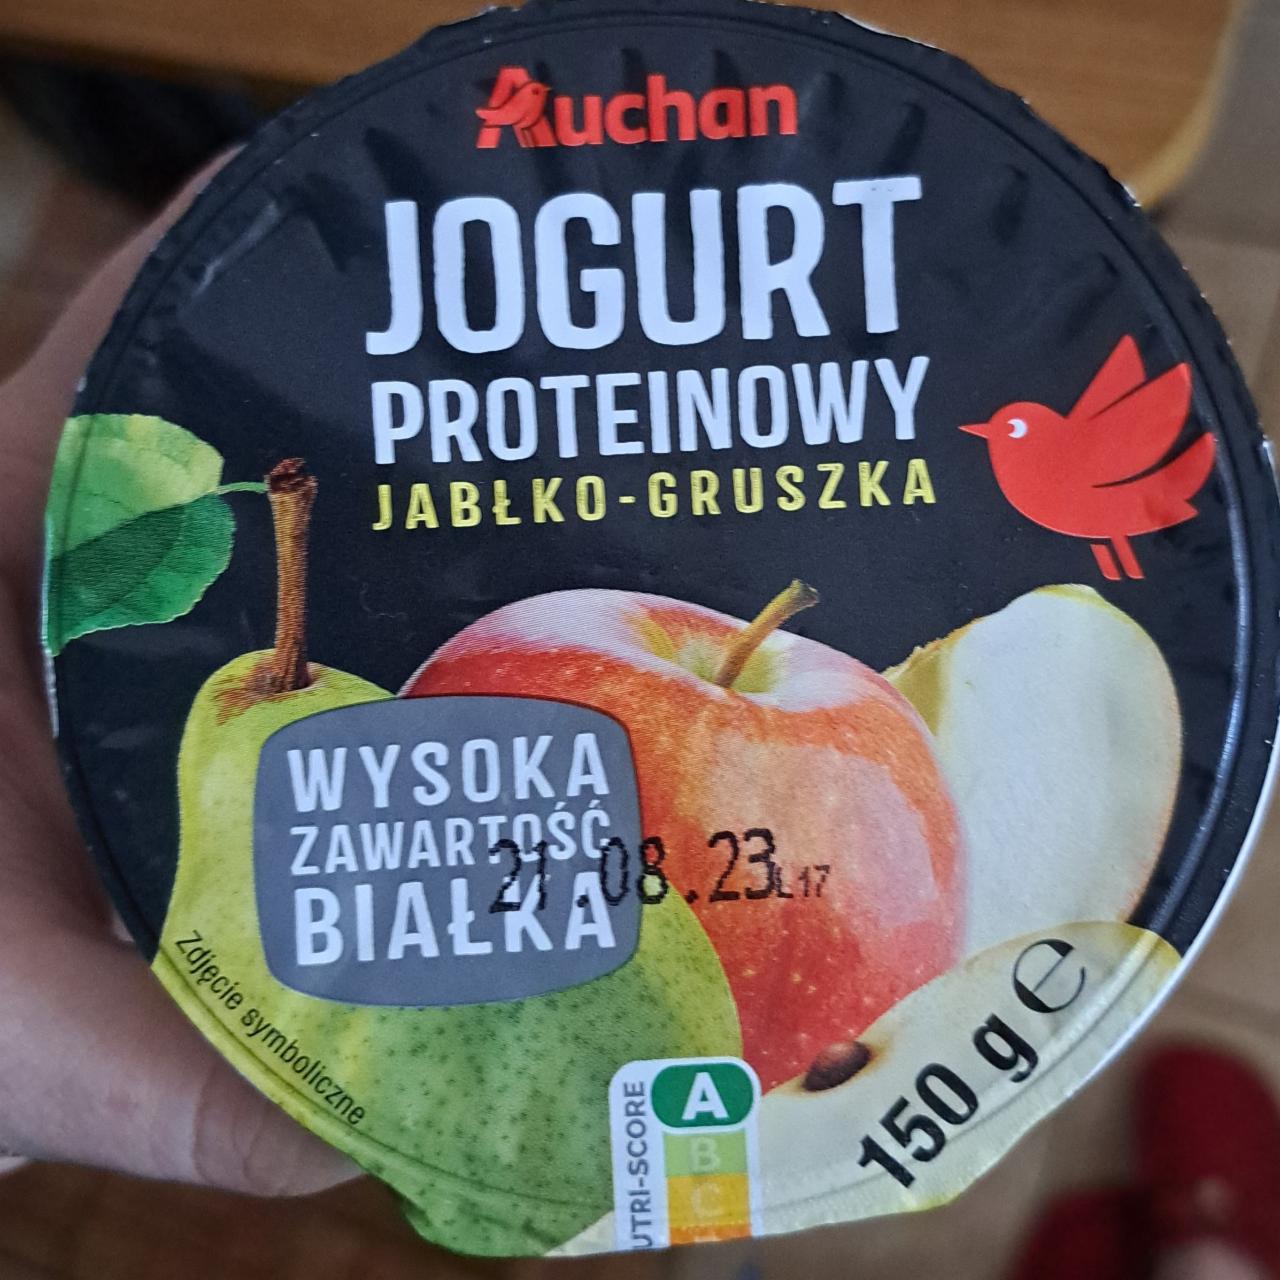 Zdjęcia - Jogurt proteinowy jabłko gruszka Auchan